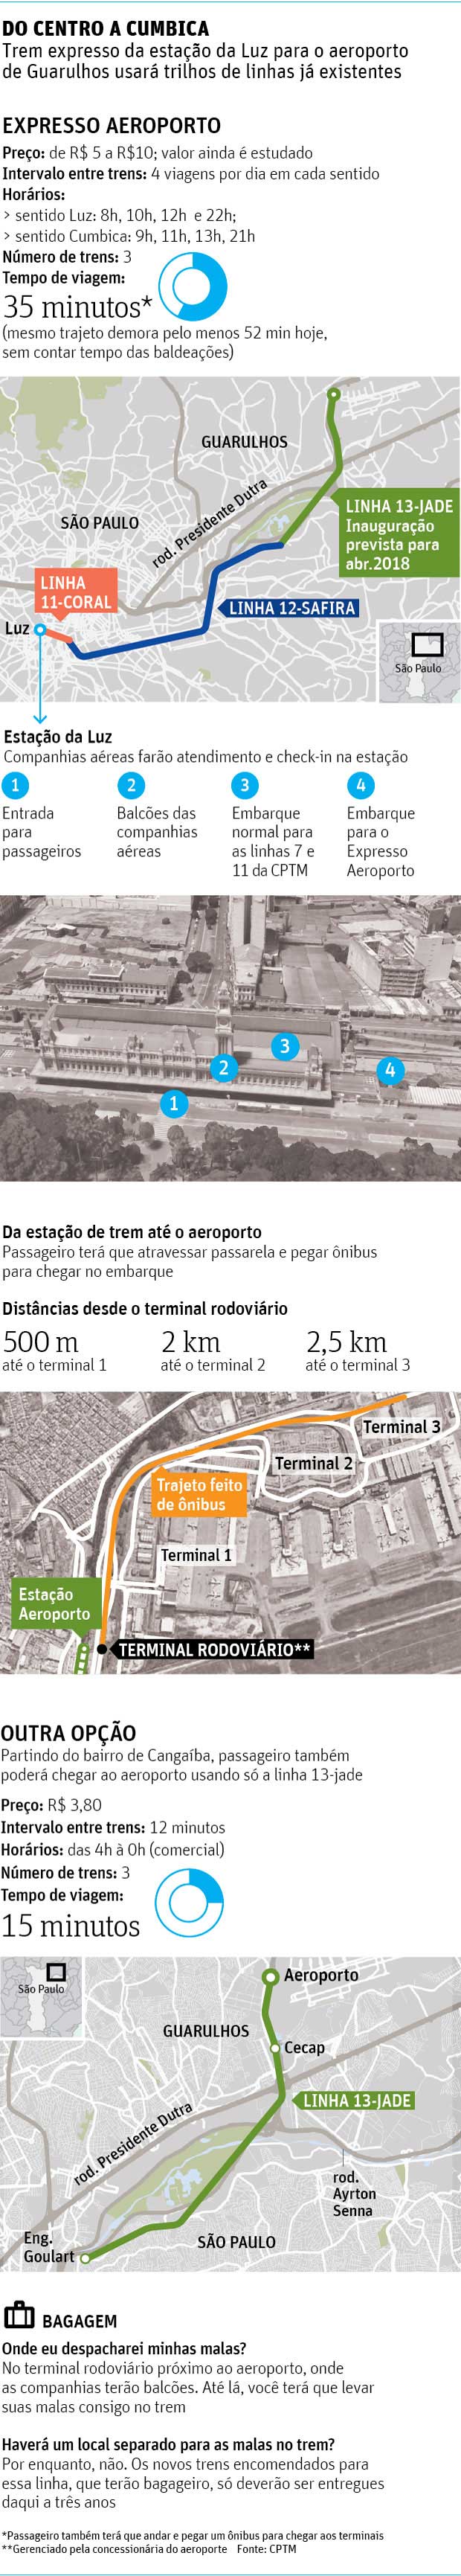 DO CENTRO A CUMBICATrem expresso da estao da Luz para o aeroporto de Guarulhos usar trilhos de linhas j existentes